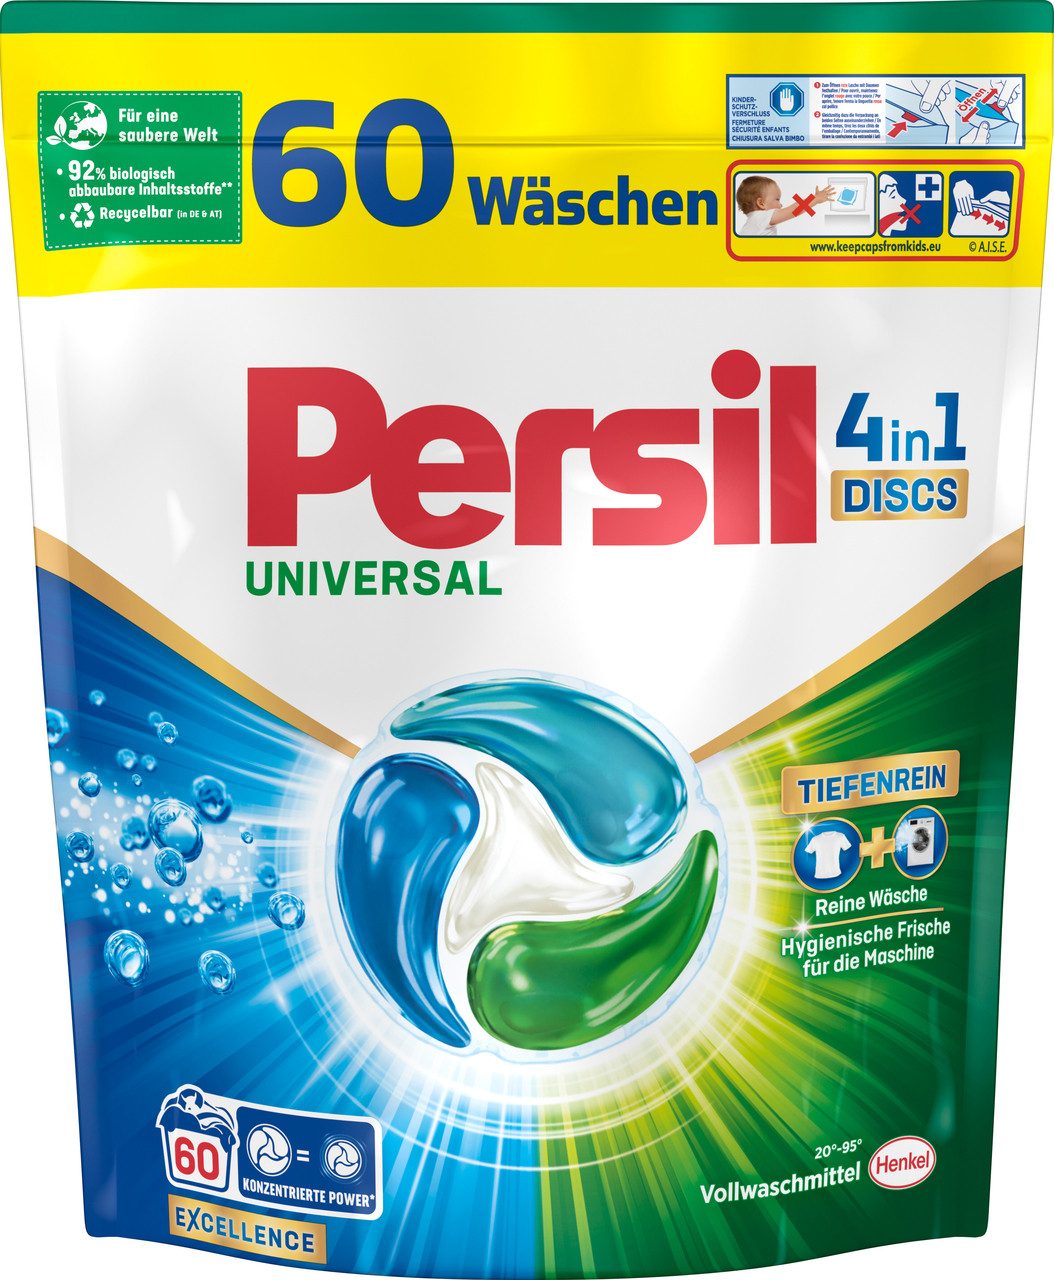 Persil Universal 4-in-1 Discs 60 WL Vollwaschmittel (60-St. 1,02kg mit Tiefenrein Technologie)